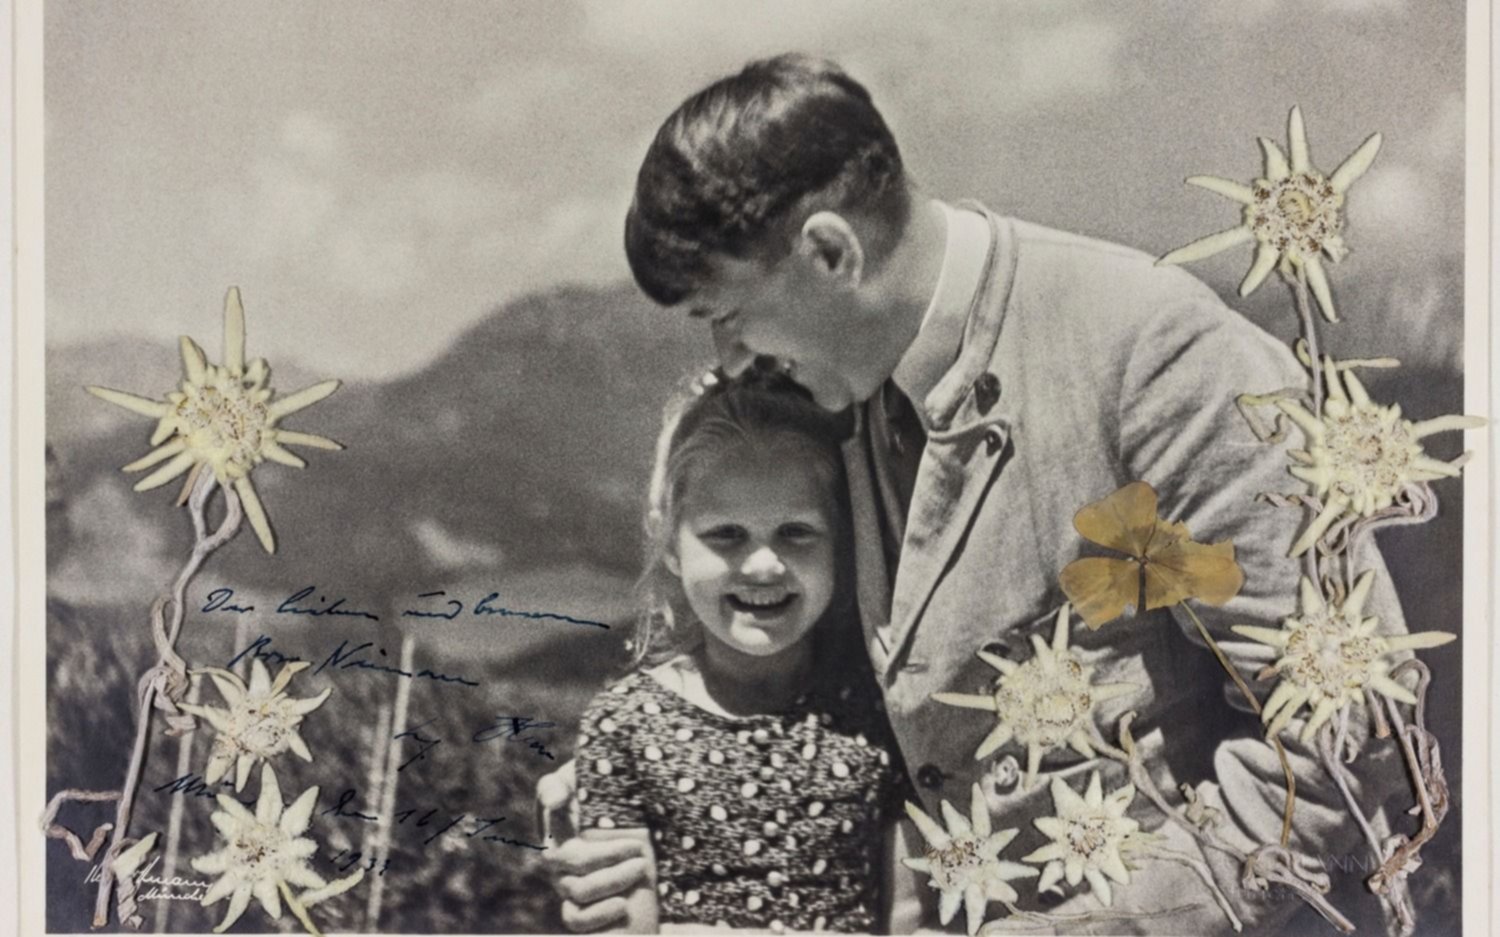 Subastaron una foto de Hitler abrazando a una nena de origen judío